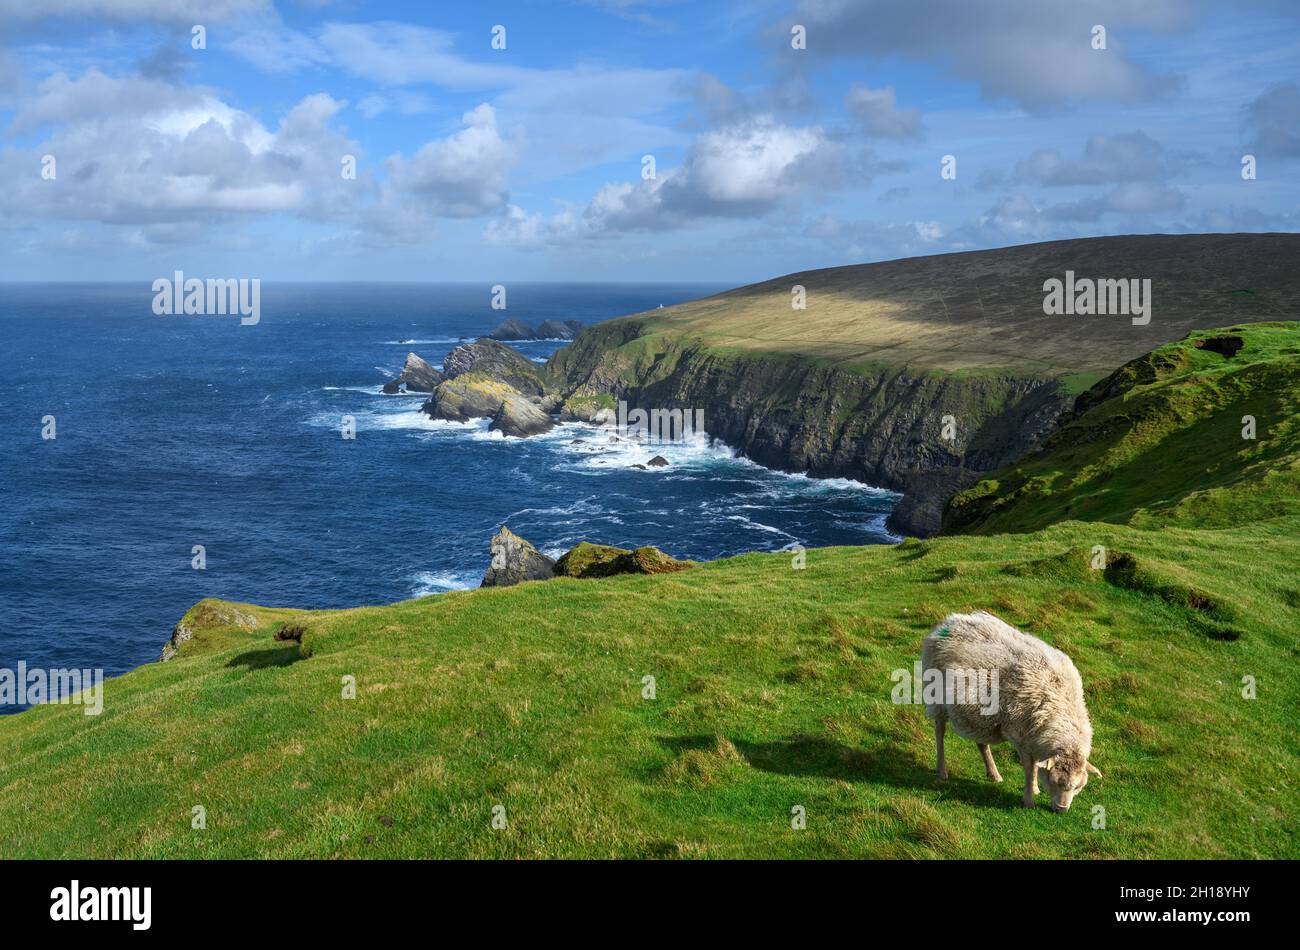 Pecore che pascolo sulla scogliera nella riserva naturale nazionale di Hermaness, Unst, Shetland, Isole Shetland, Scozia, REGNO UNITO Foto Stock